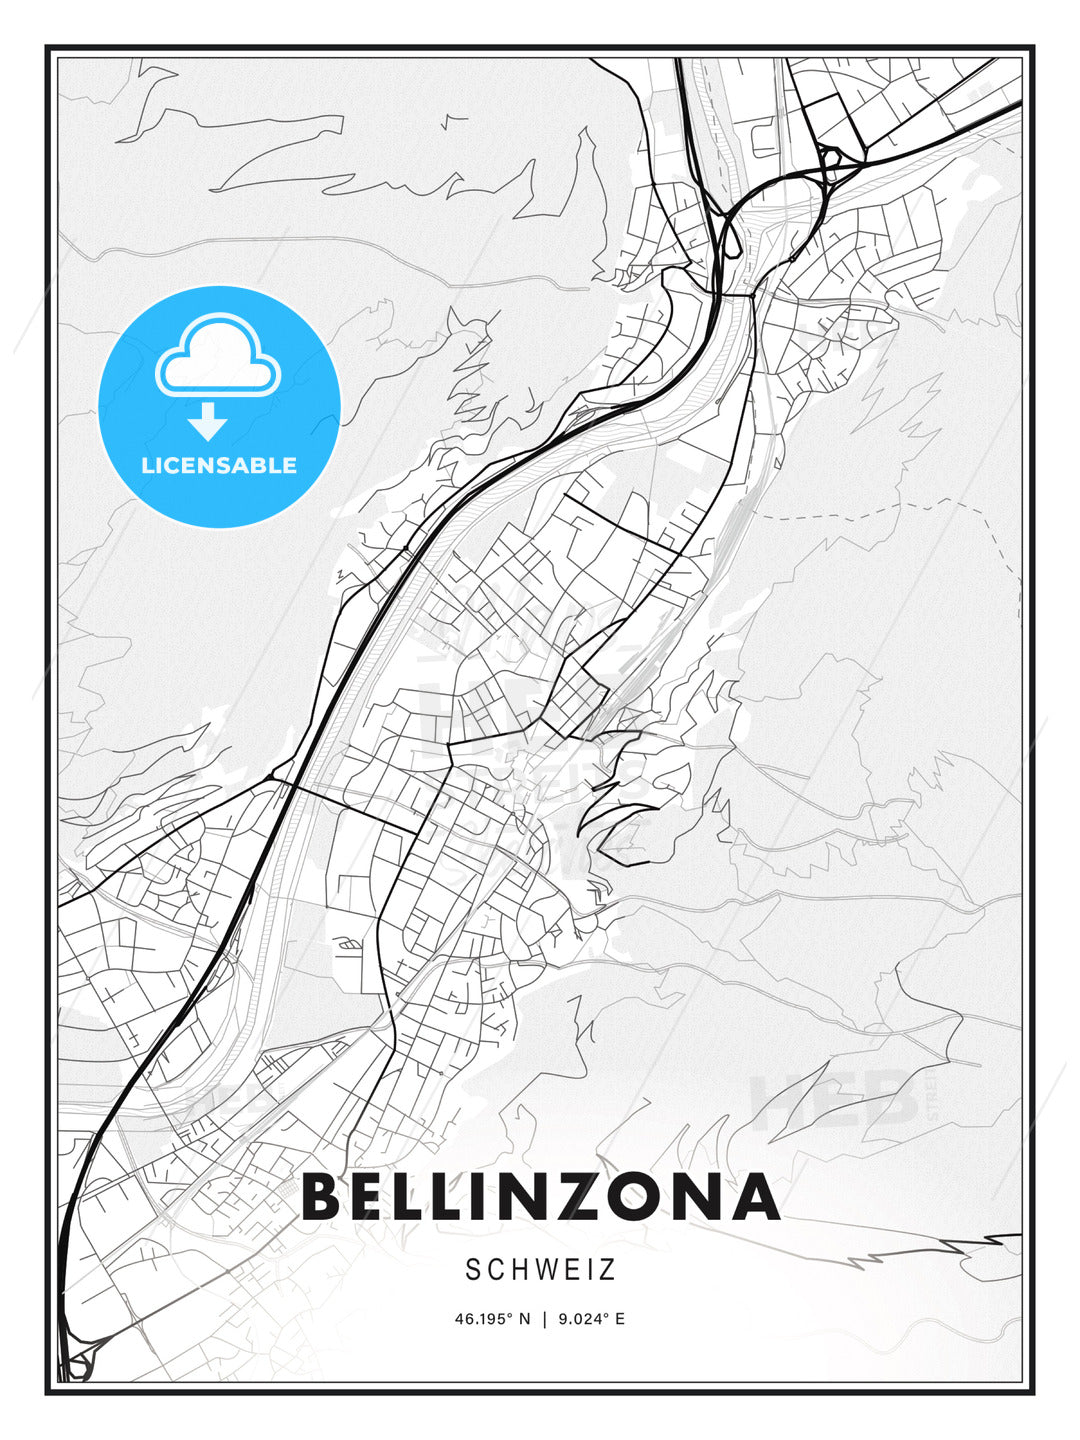 Bellinzona, Switzerland, Modern Print Template in Various Formats - HEBSTREITS Sketches